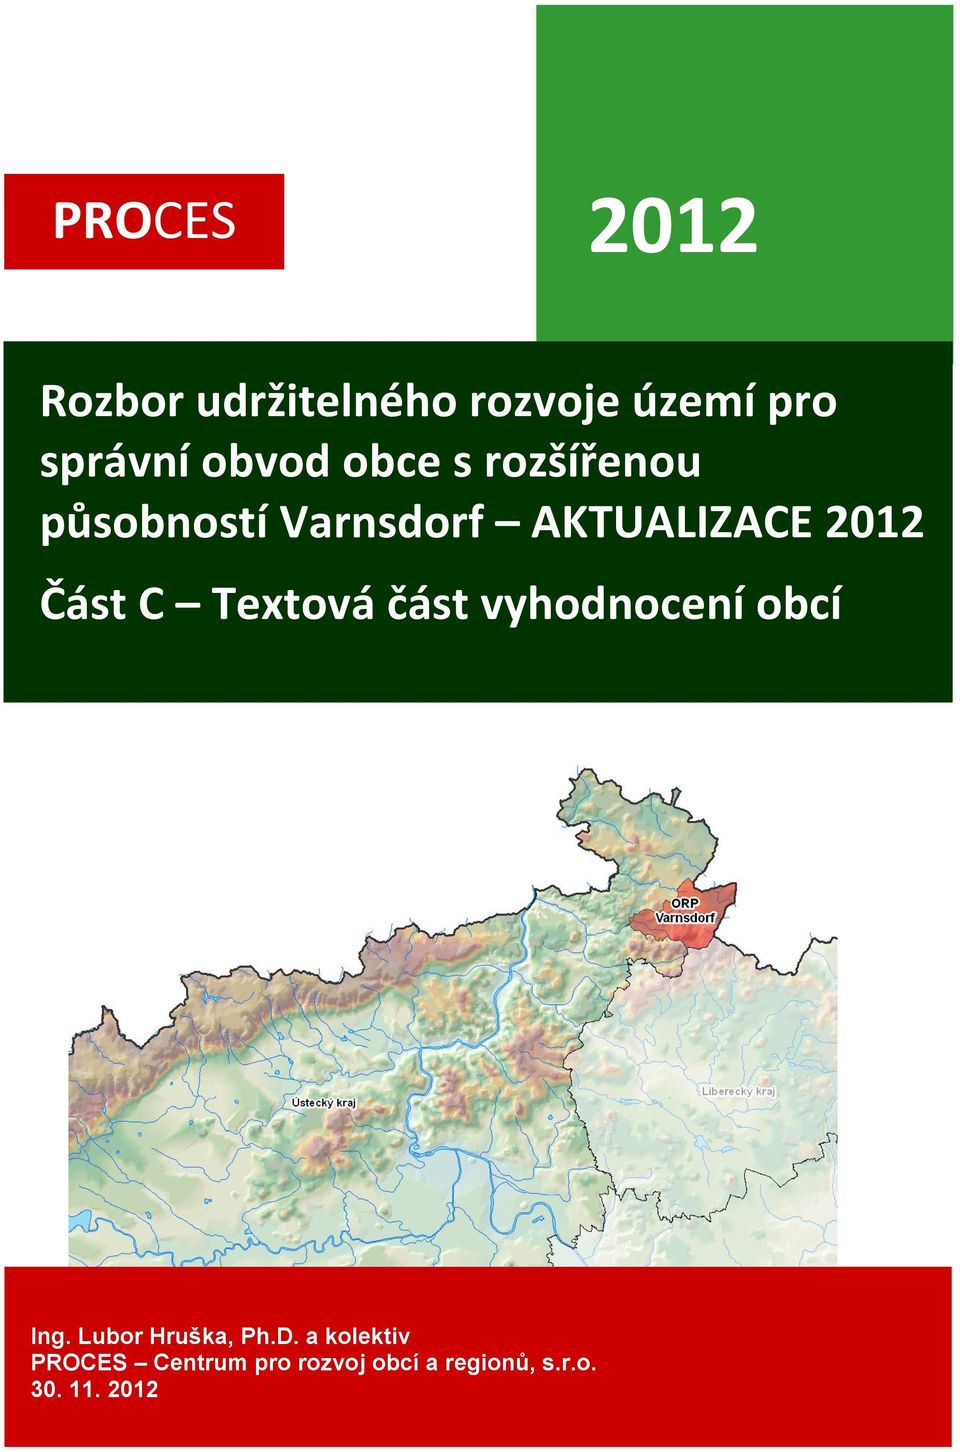 Textová část vyhodnocení obcí Ing. Lubor Hruška, Ph.D.